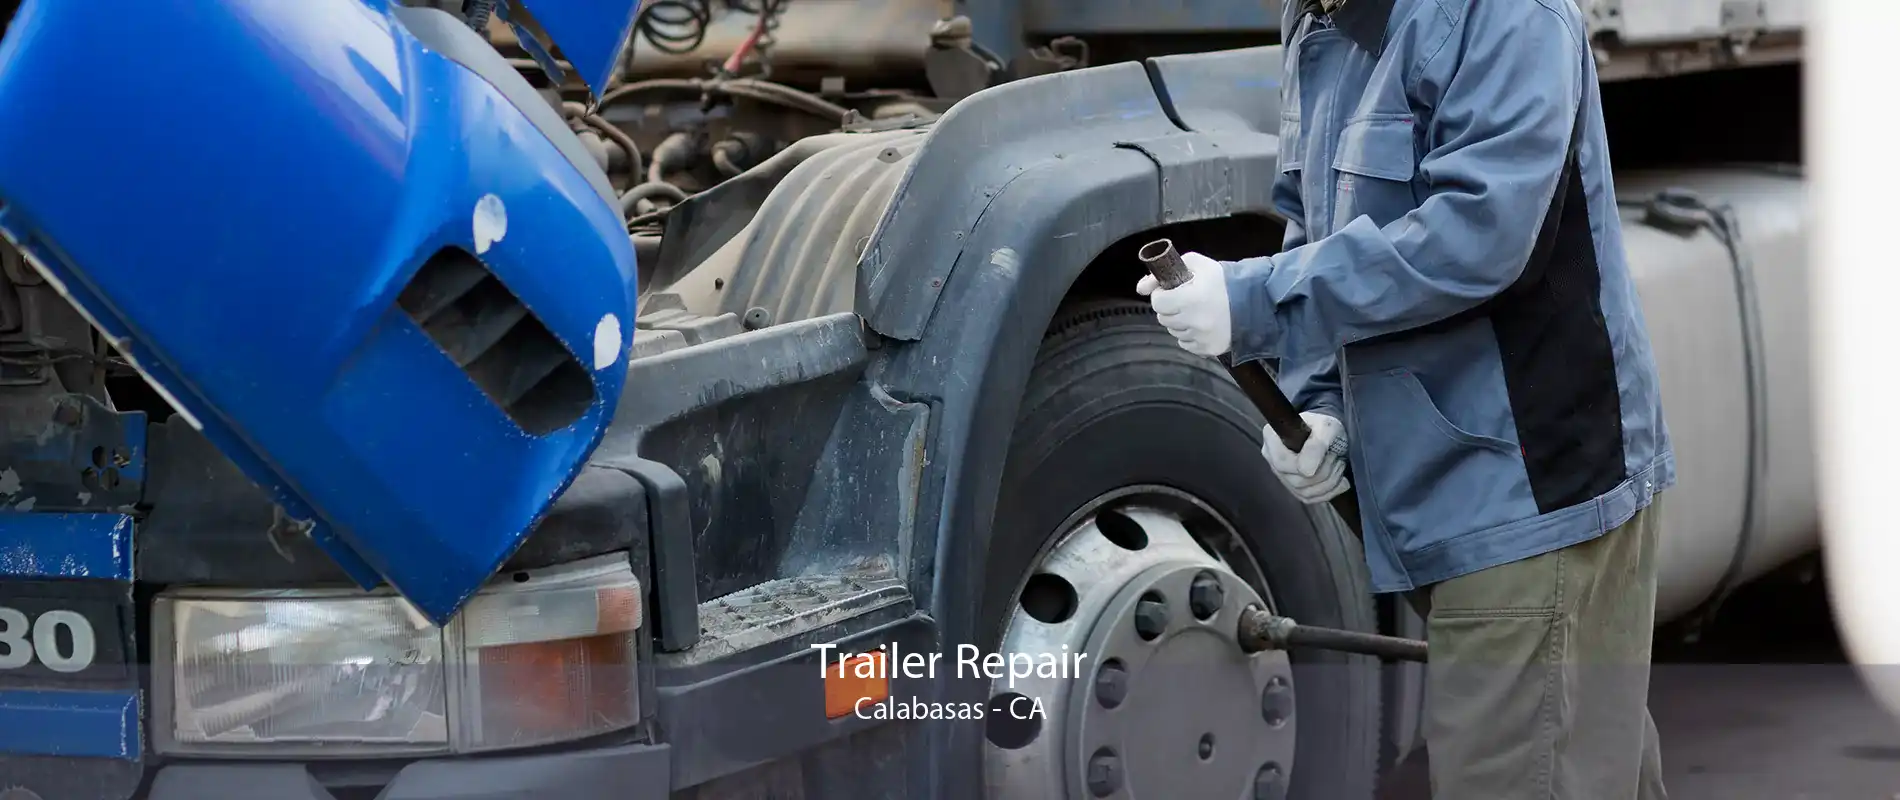 Trailer Repair Calabasas - CA